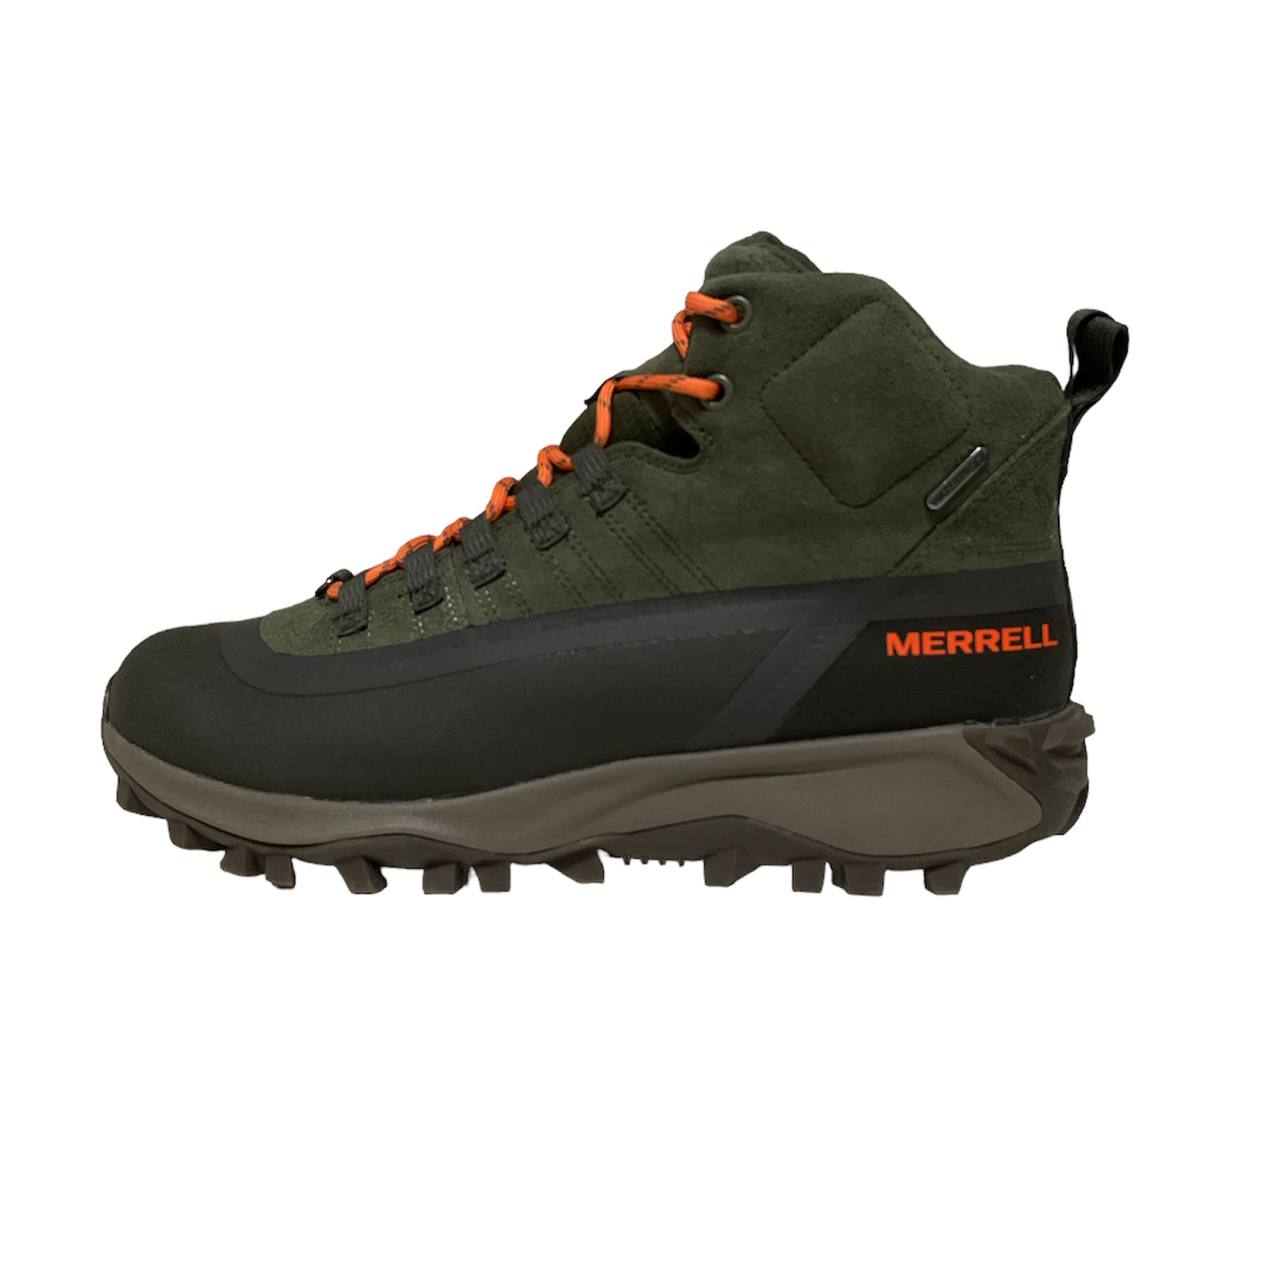 نکته خرید - قیمت روز کفش کوهنوردی مردانه مرل مدل J19293 خرید